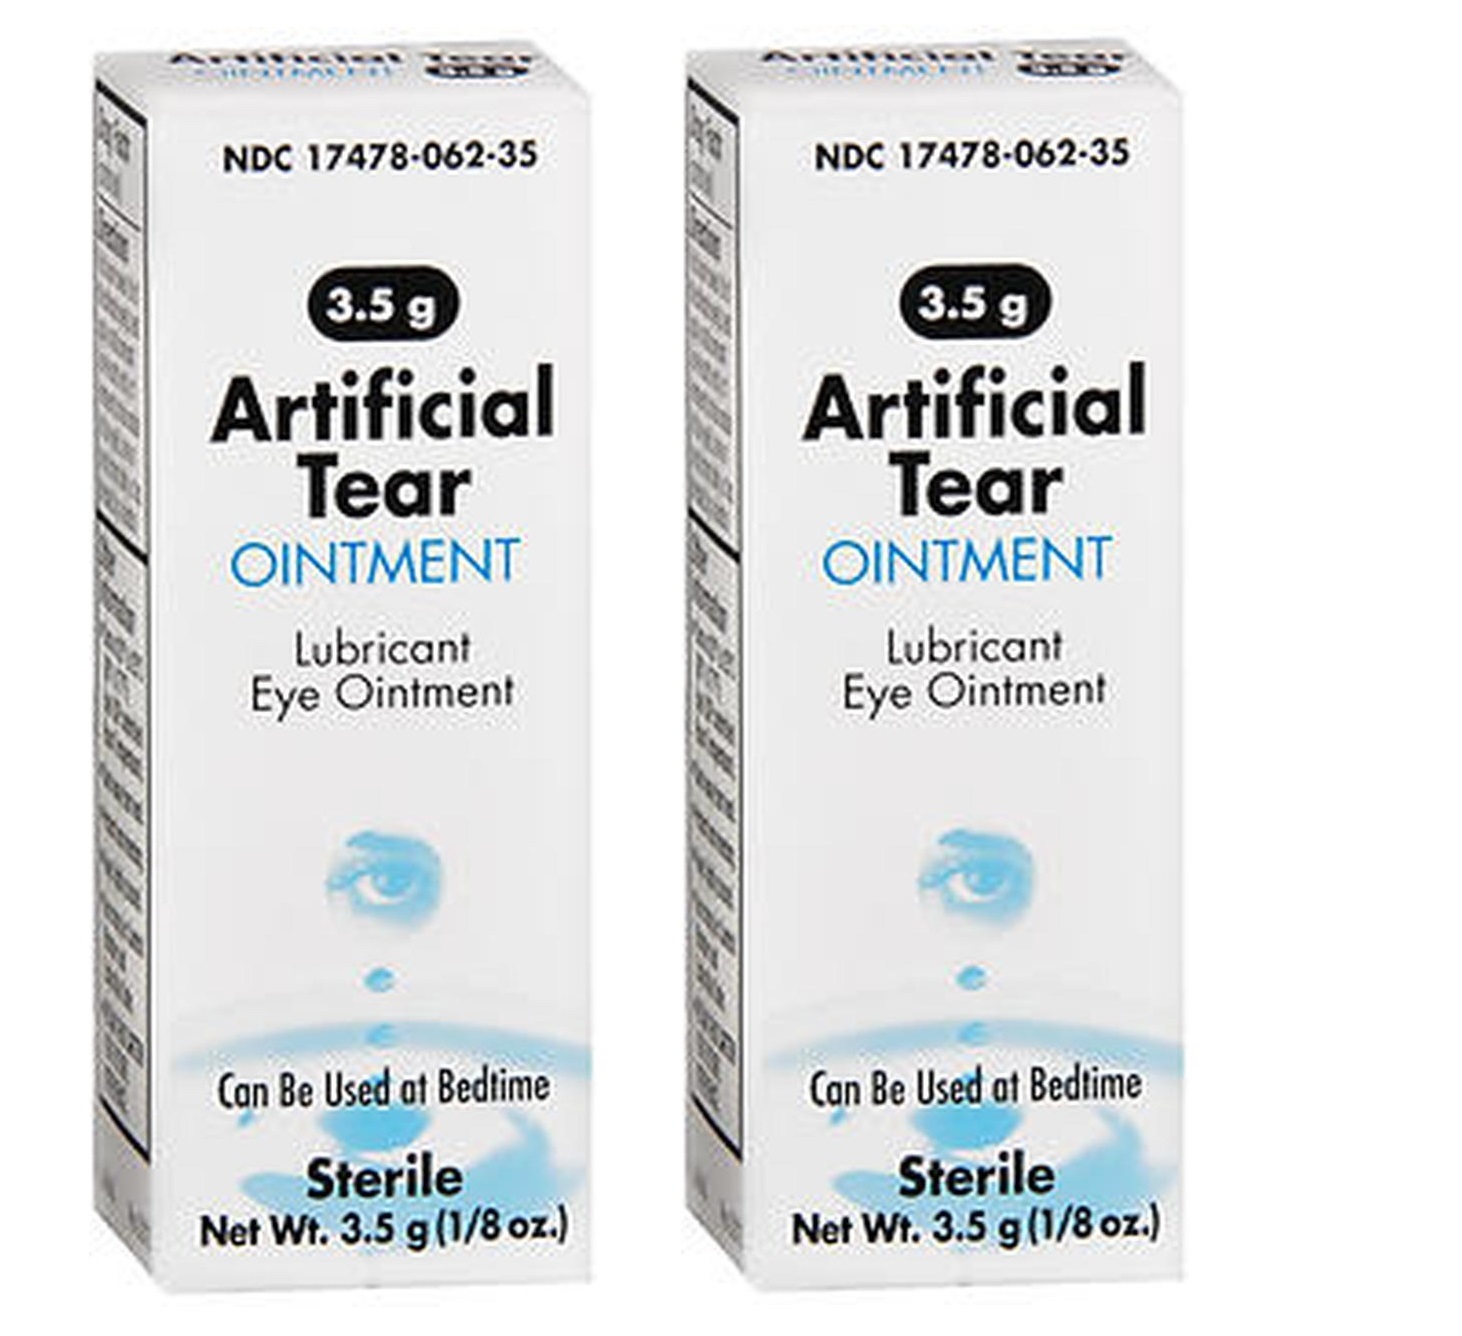 2pack Akorn Akwa Artificial Tears Lubricant Eye Ointment 3.5gm Exp 2021